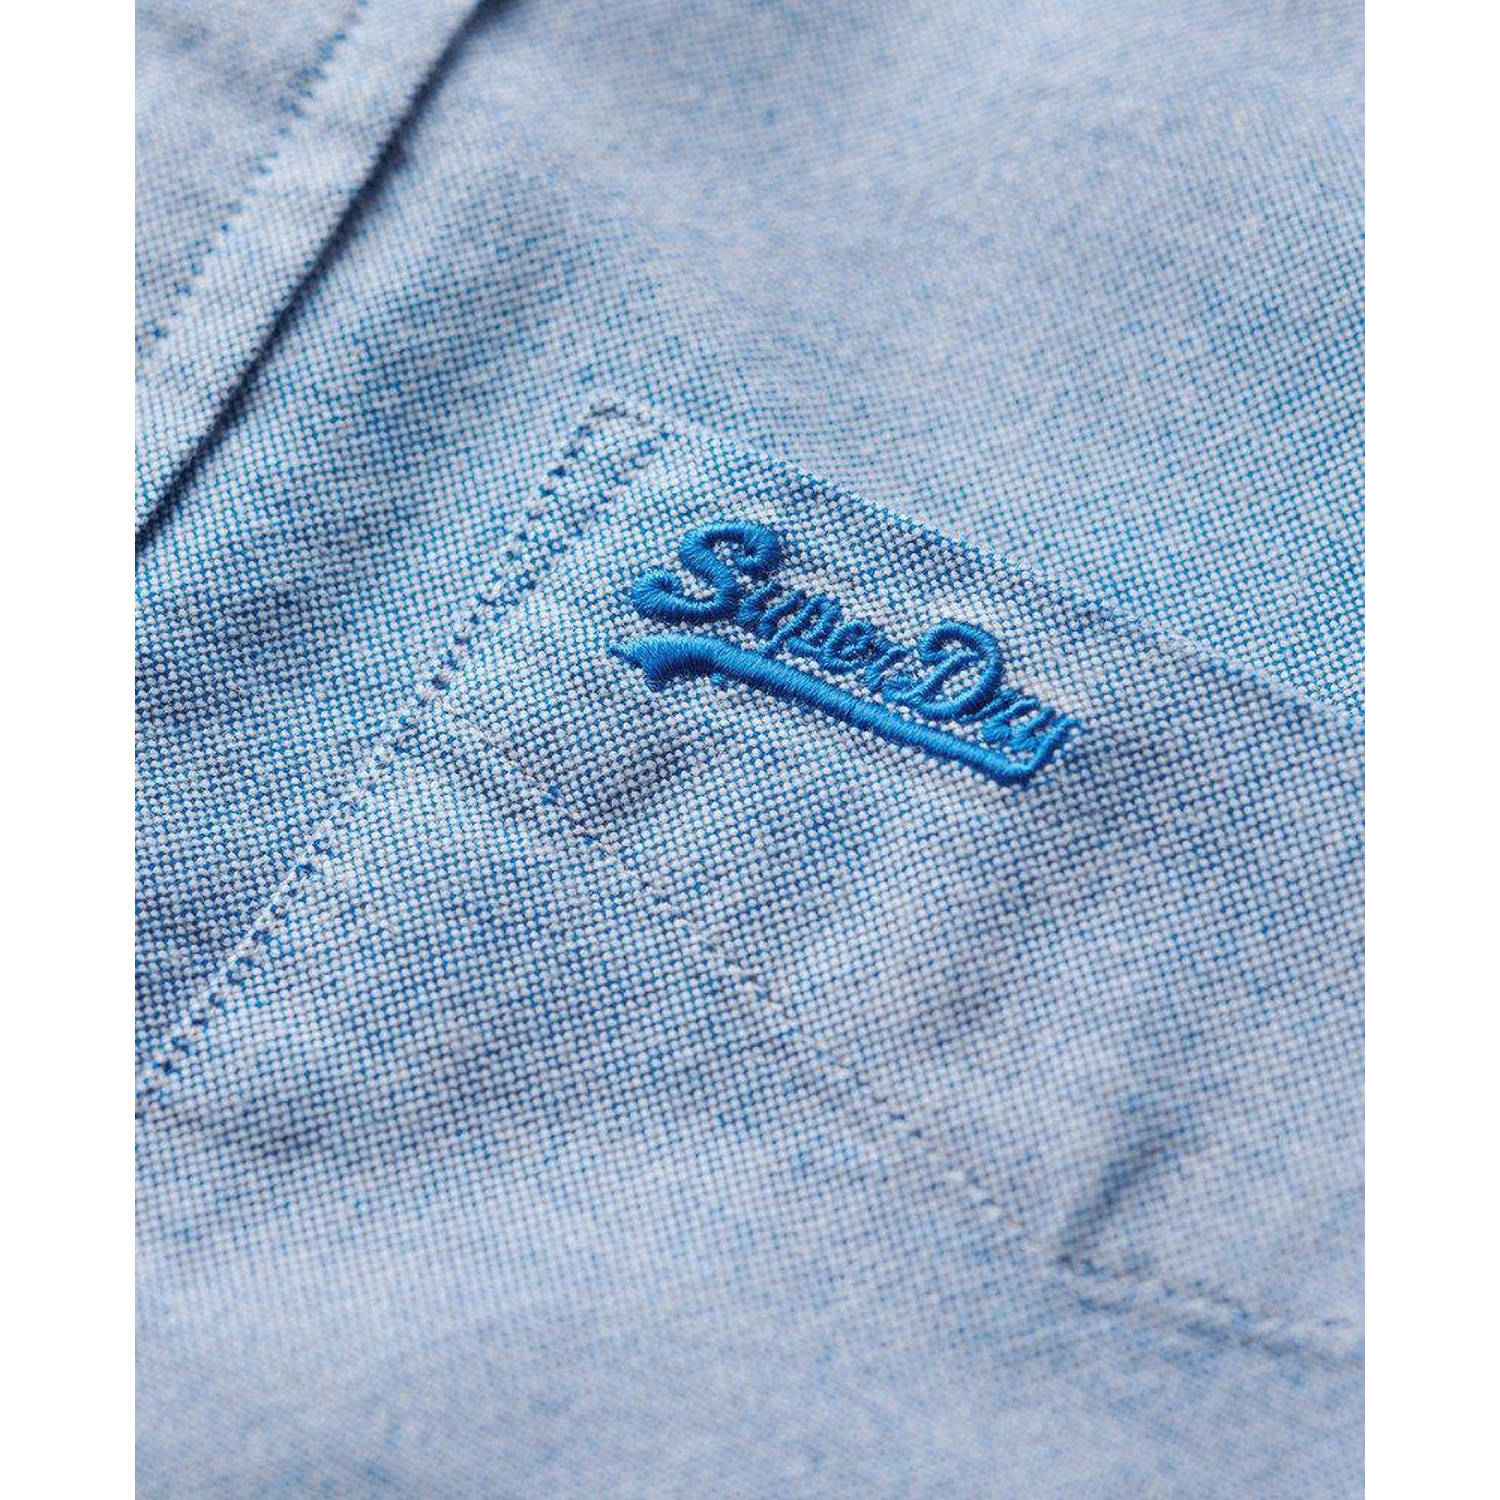 Superdry regular fit overhemd met logo lichtblauw